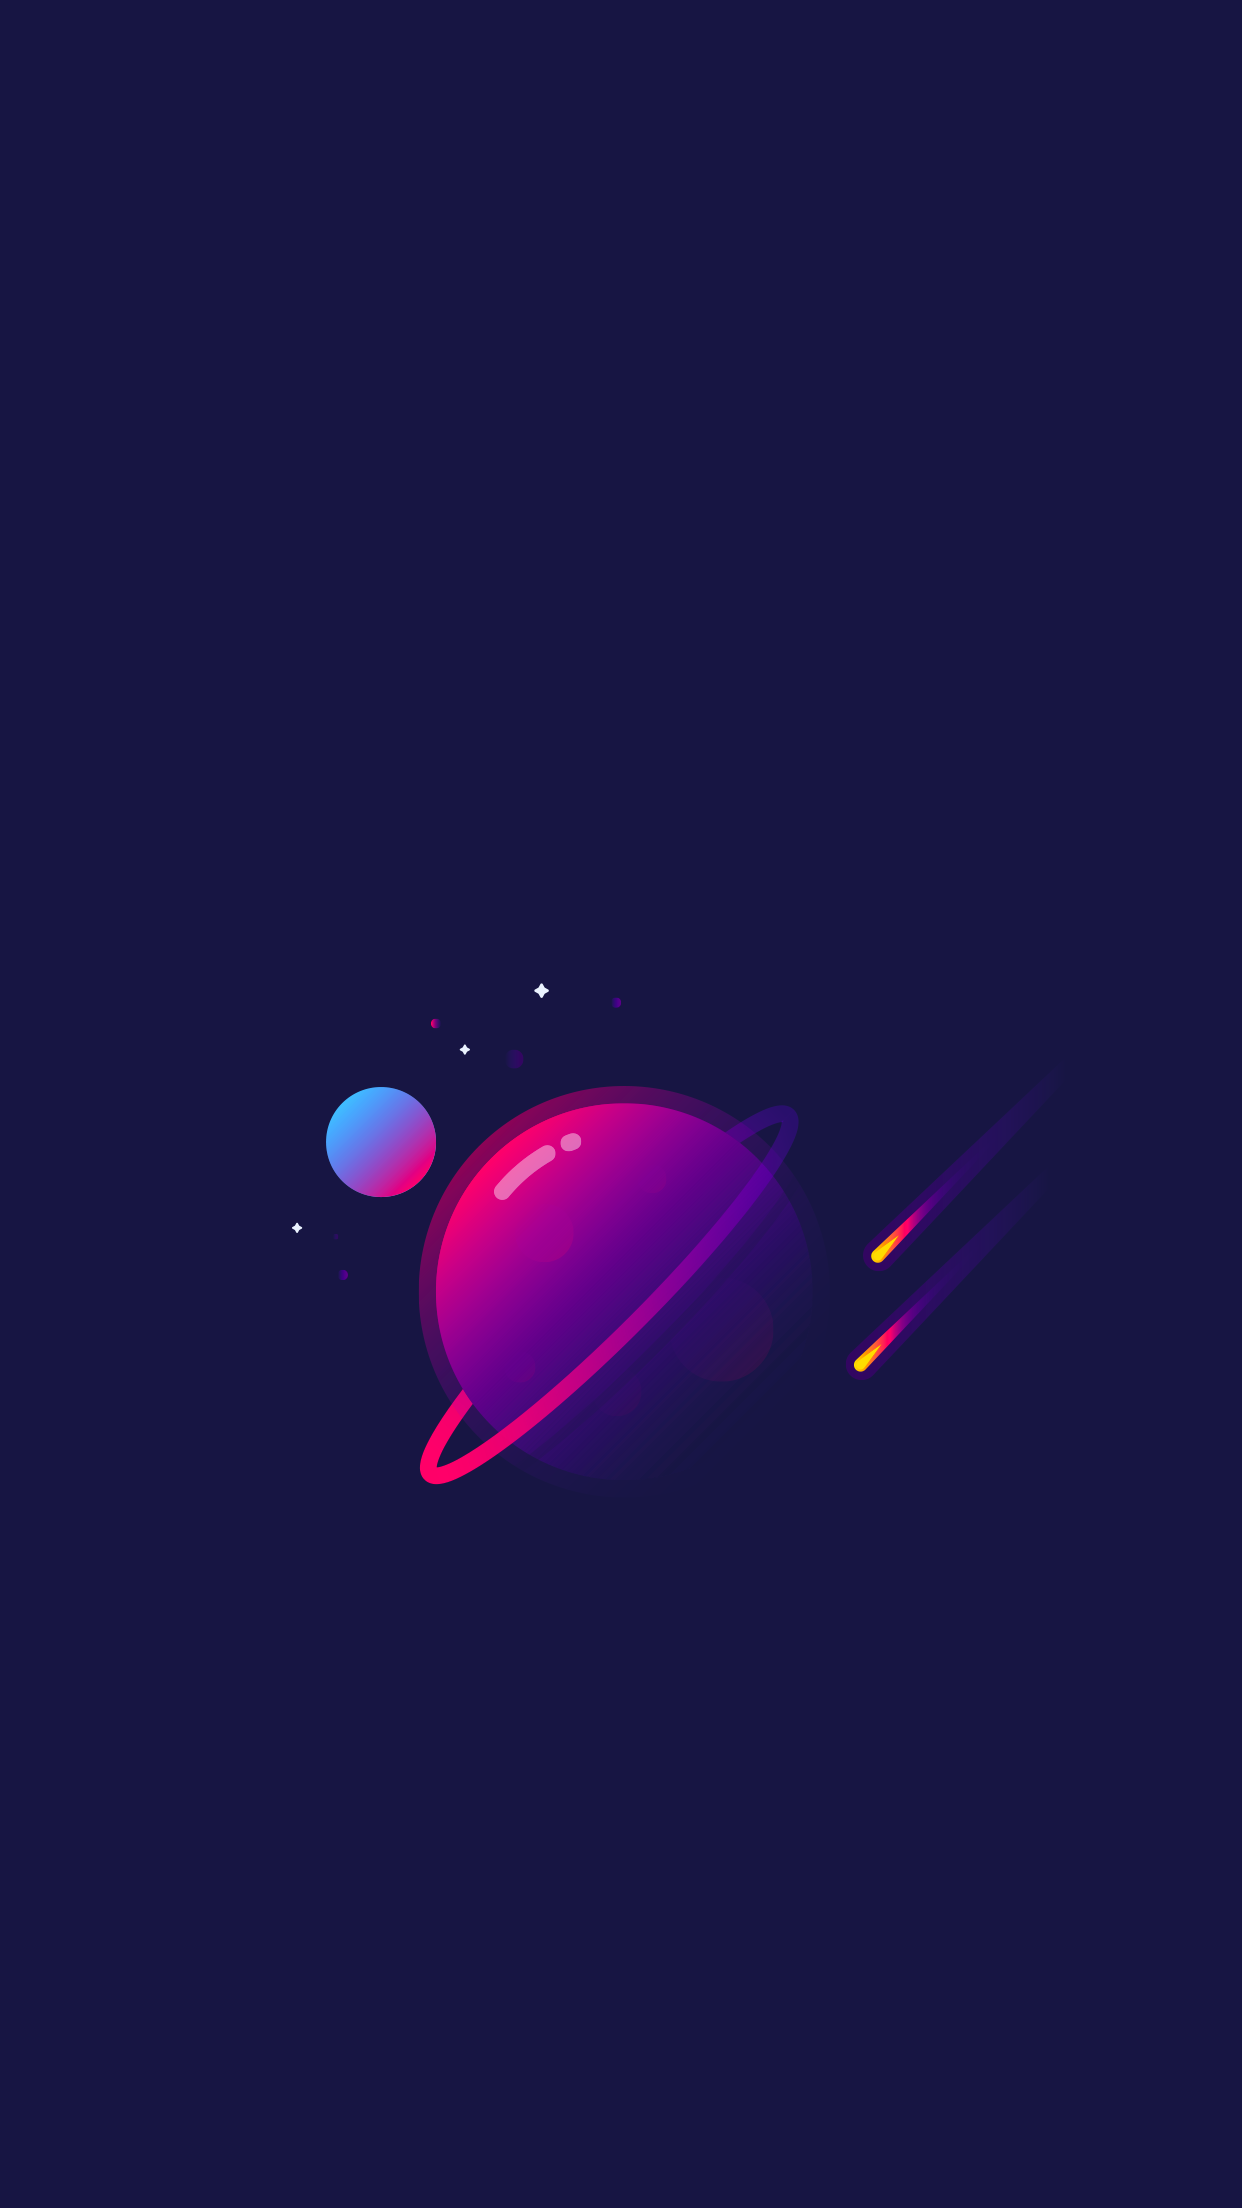 ilustración iphone fondo de pantalla,violeta,azul,púrpura,ligero,atmósfera